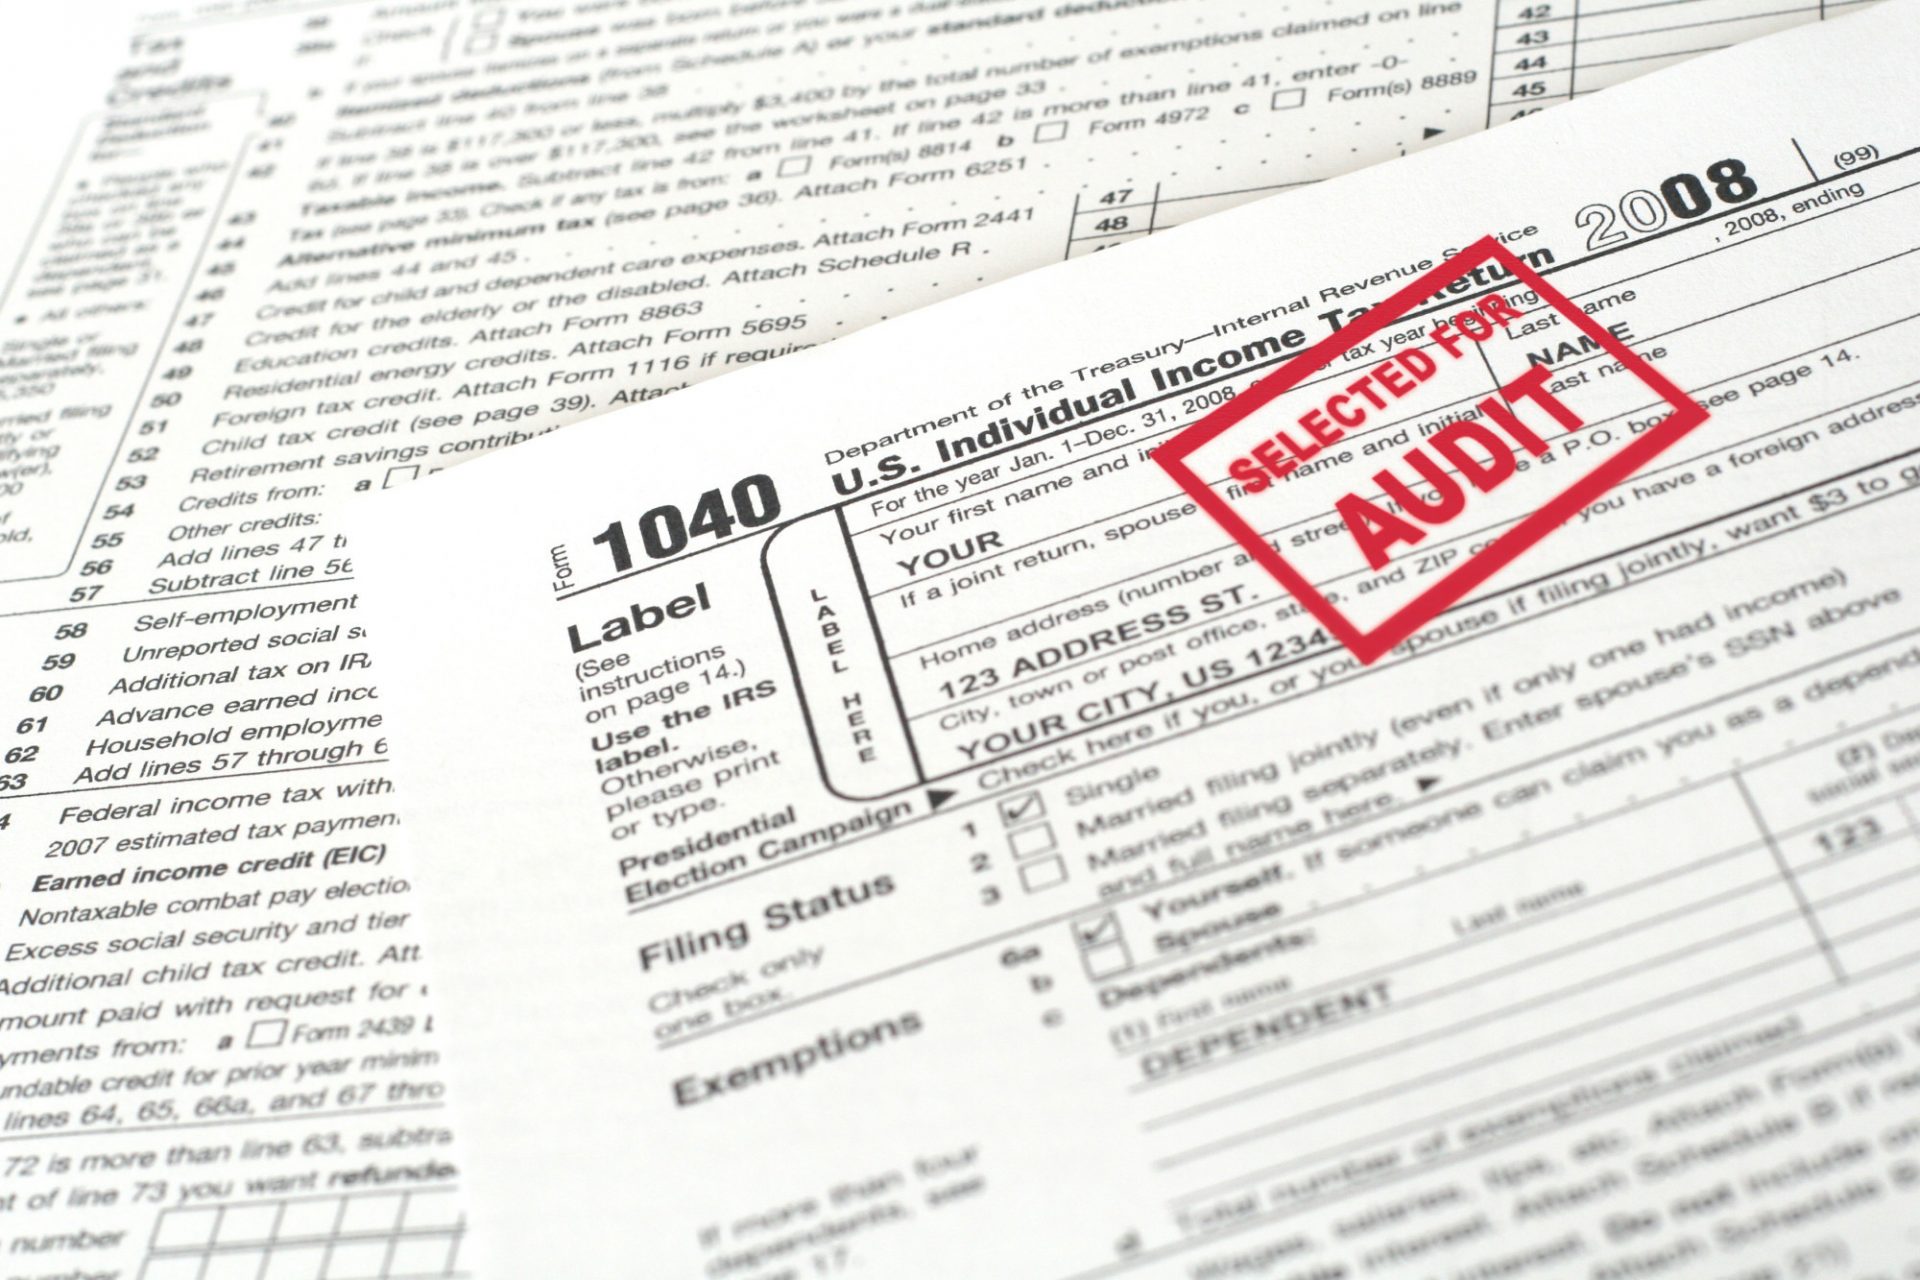 IRS Tax Audit